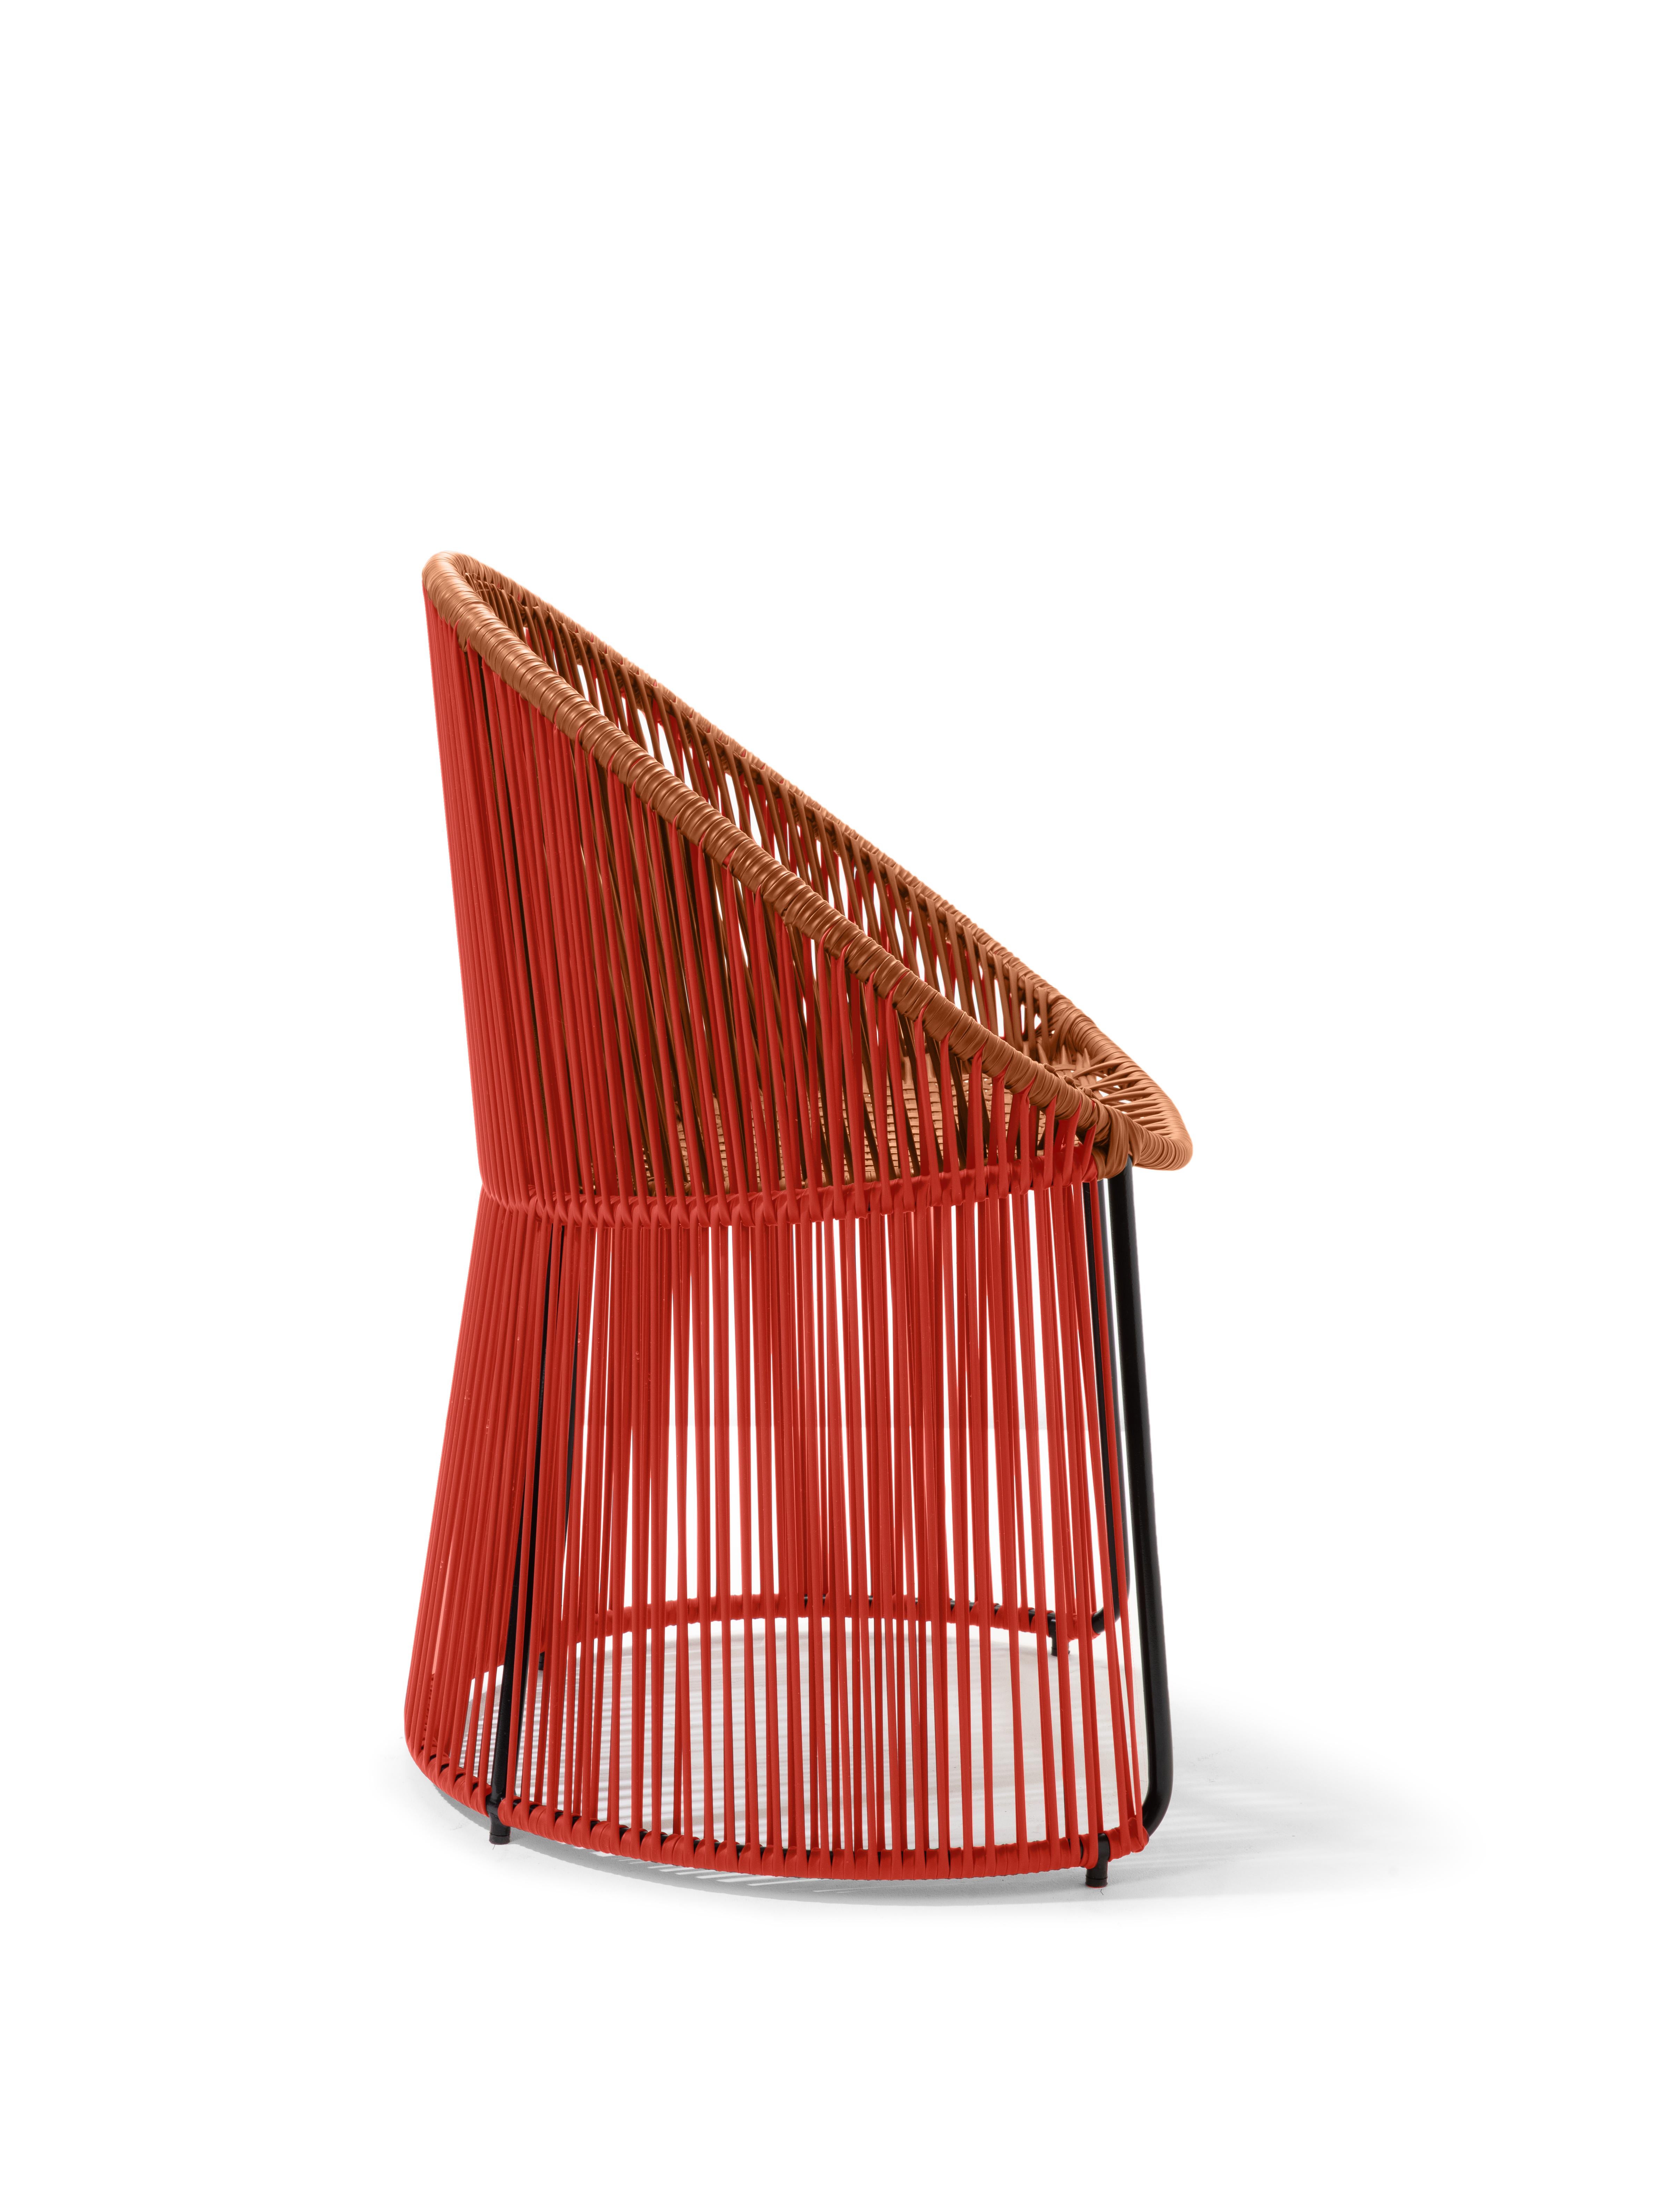 German Coral Cartagenas Dining Chair by Sebastian Herkner For Sale